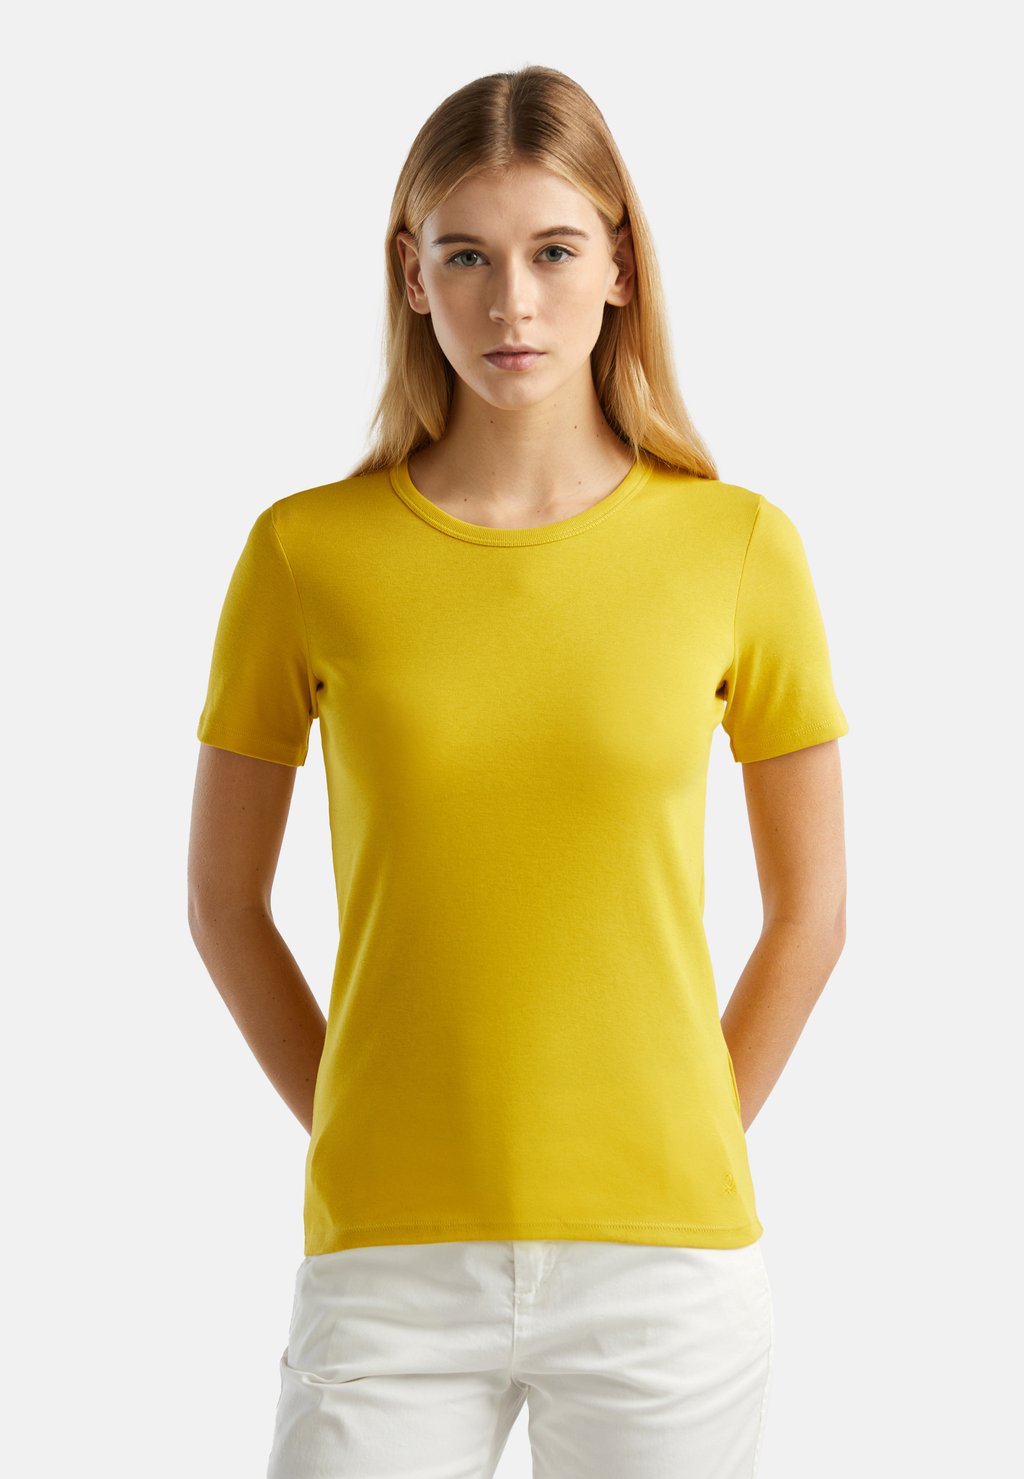 Базовая футболка United Colors of Benetton, горчица